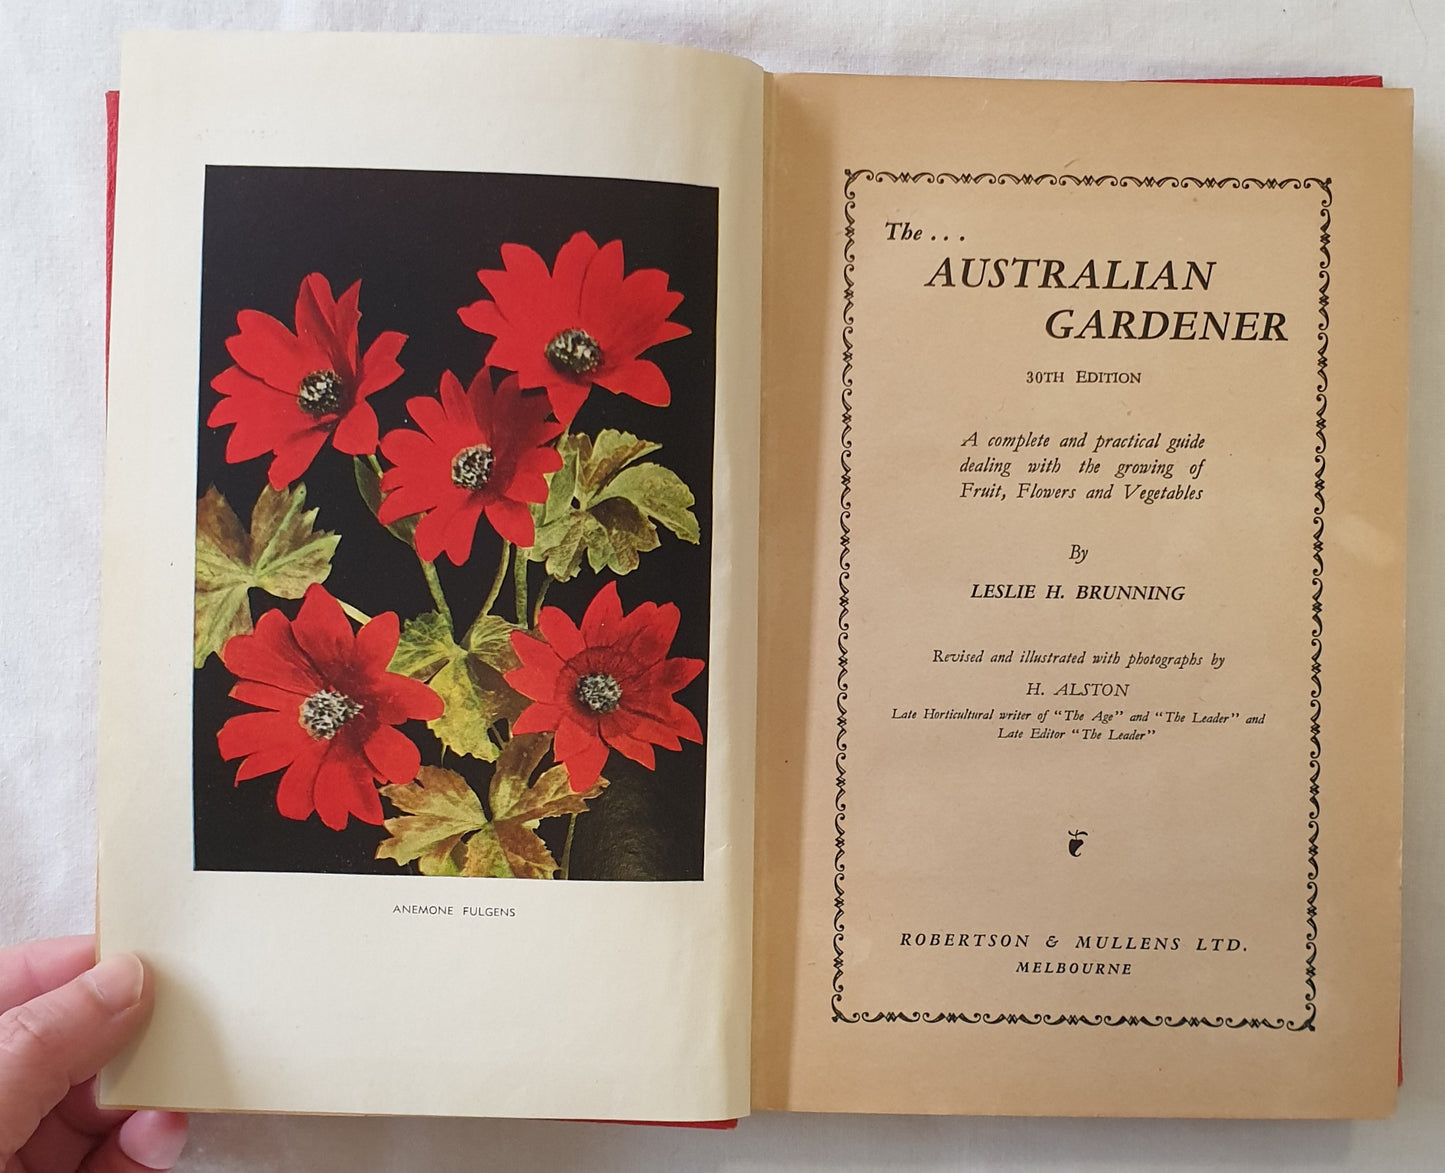 The Australian Gardener by Leslie H. Brunning